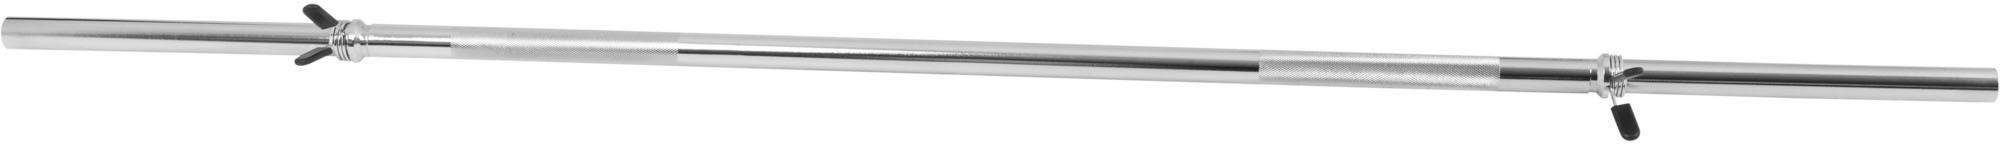 GORILLA SPORTS Langhantelstange Langhantelstange Chrom 170 cm mit Federverschluss, Chrom, 170 cm (mit Federklemmen) | Langhantelstangen